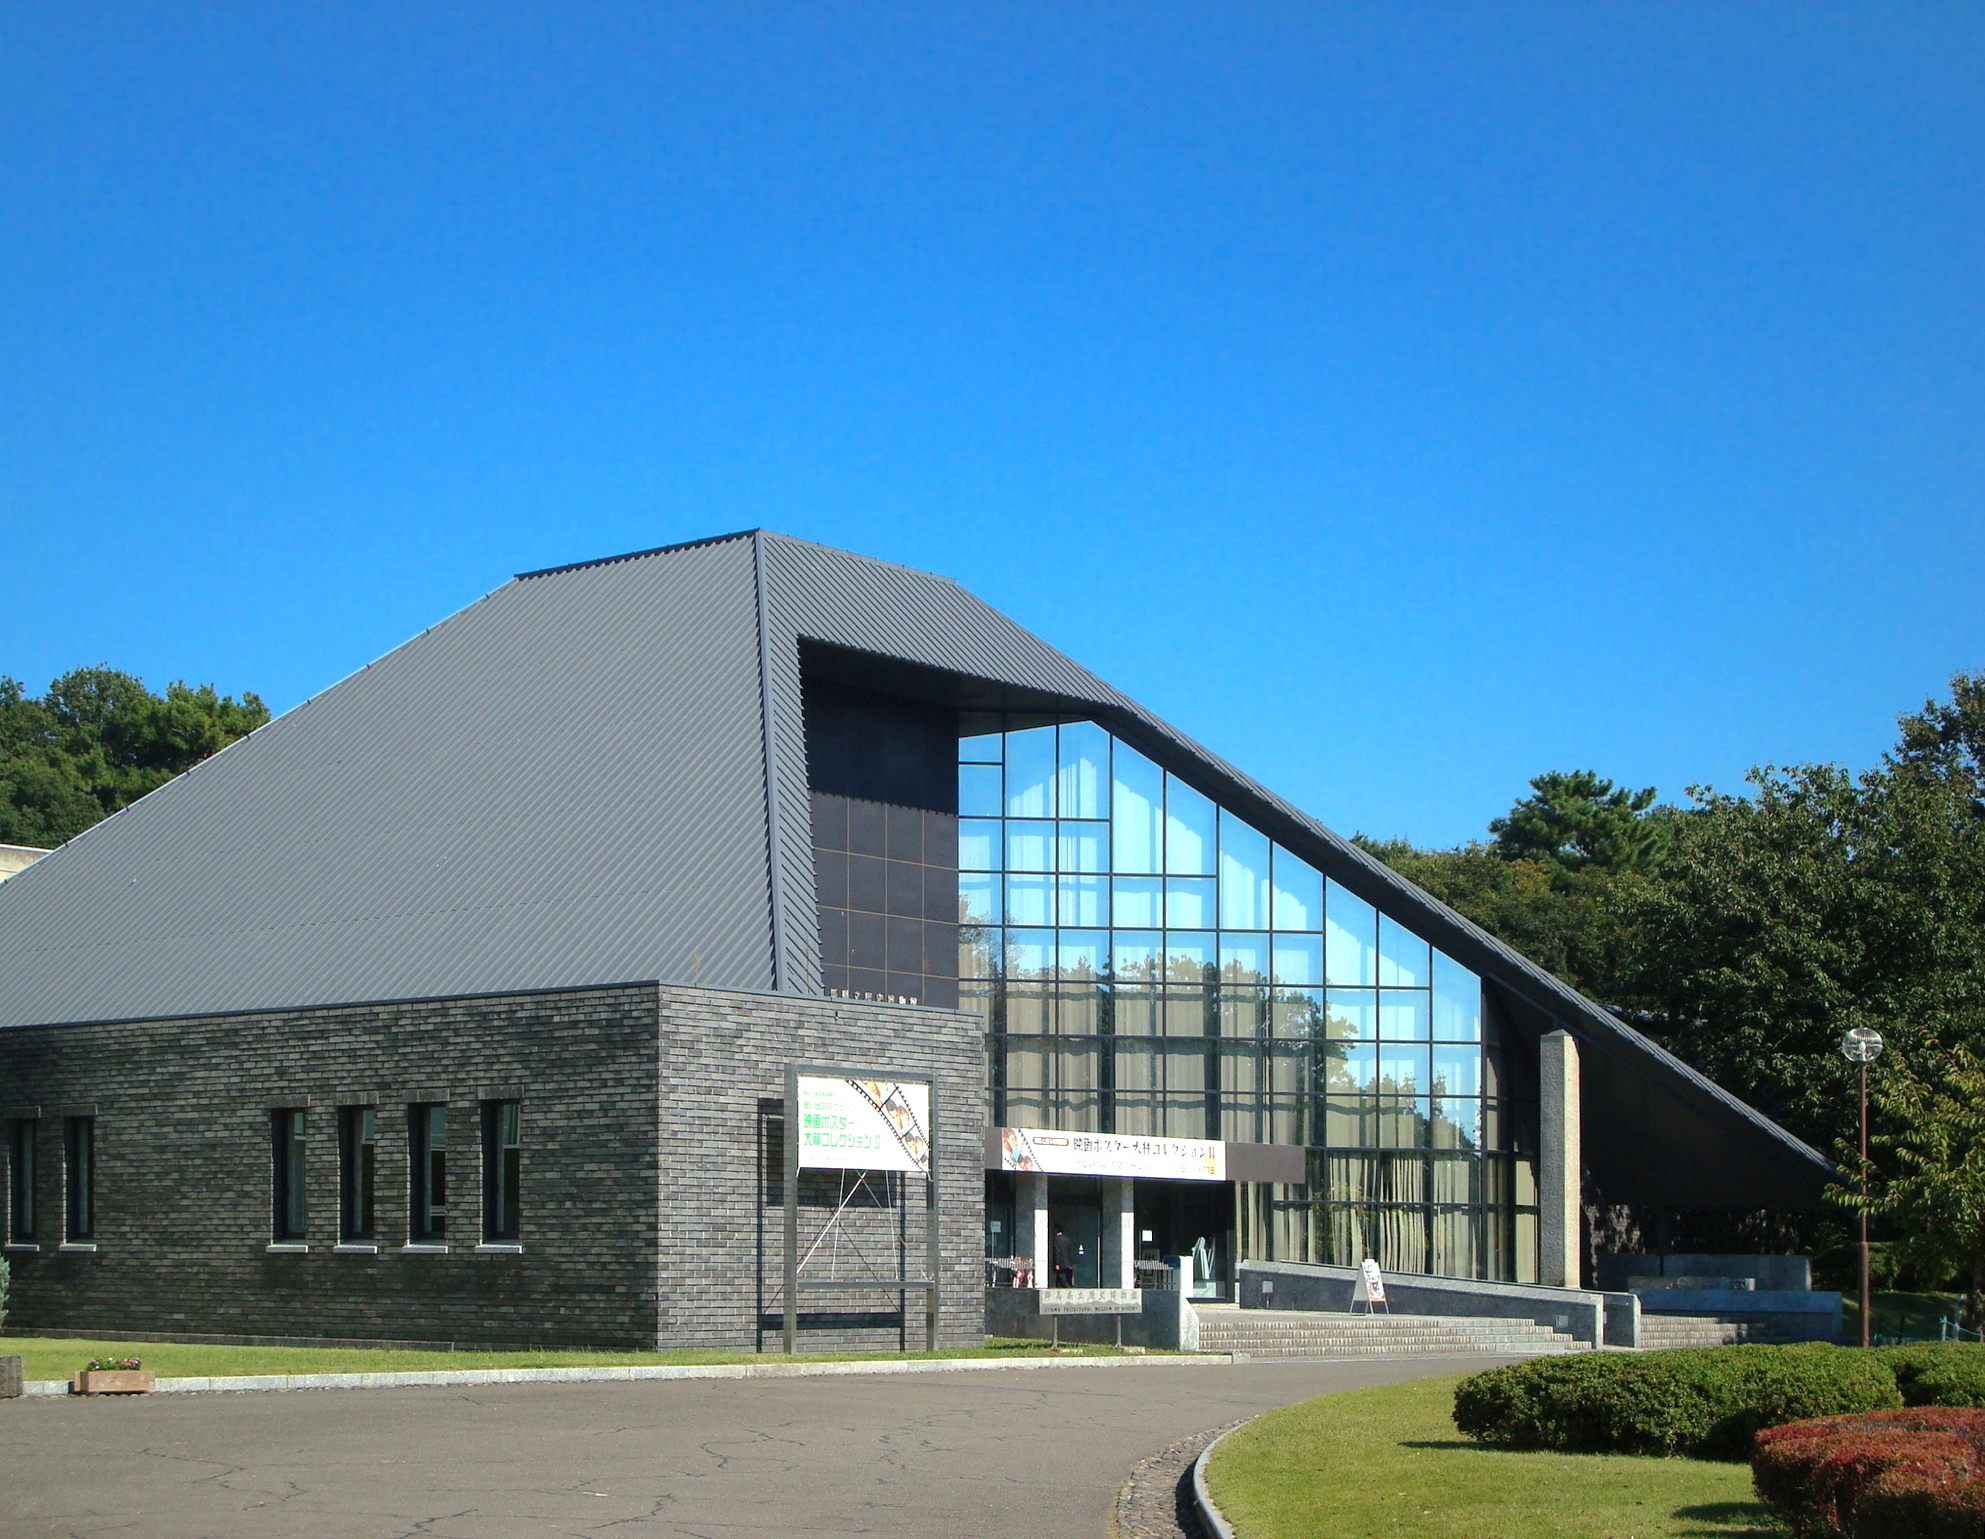 群馬県立歴史博物館